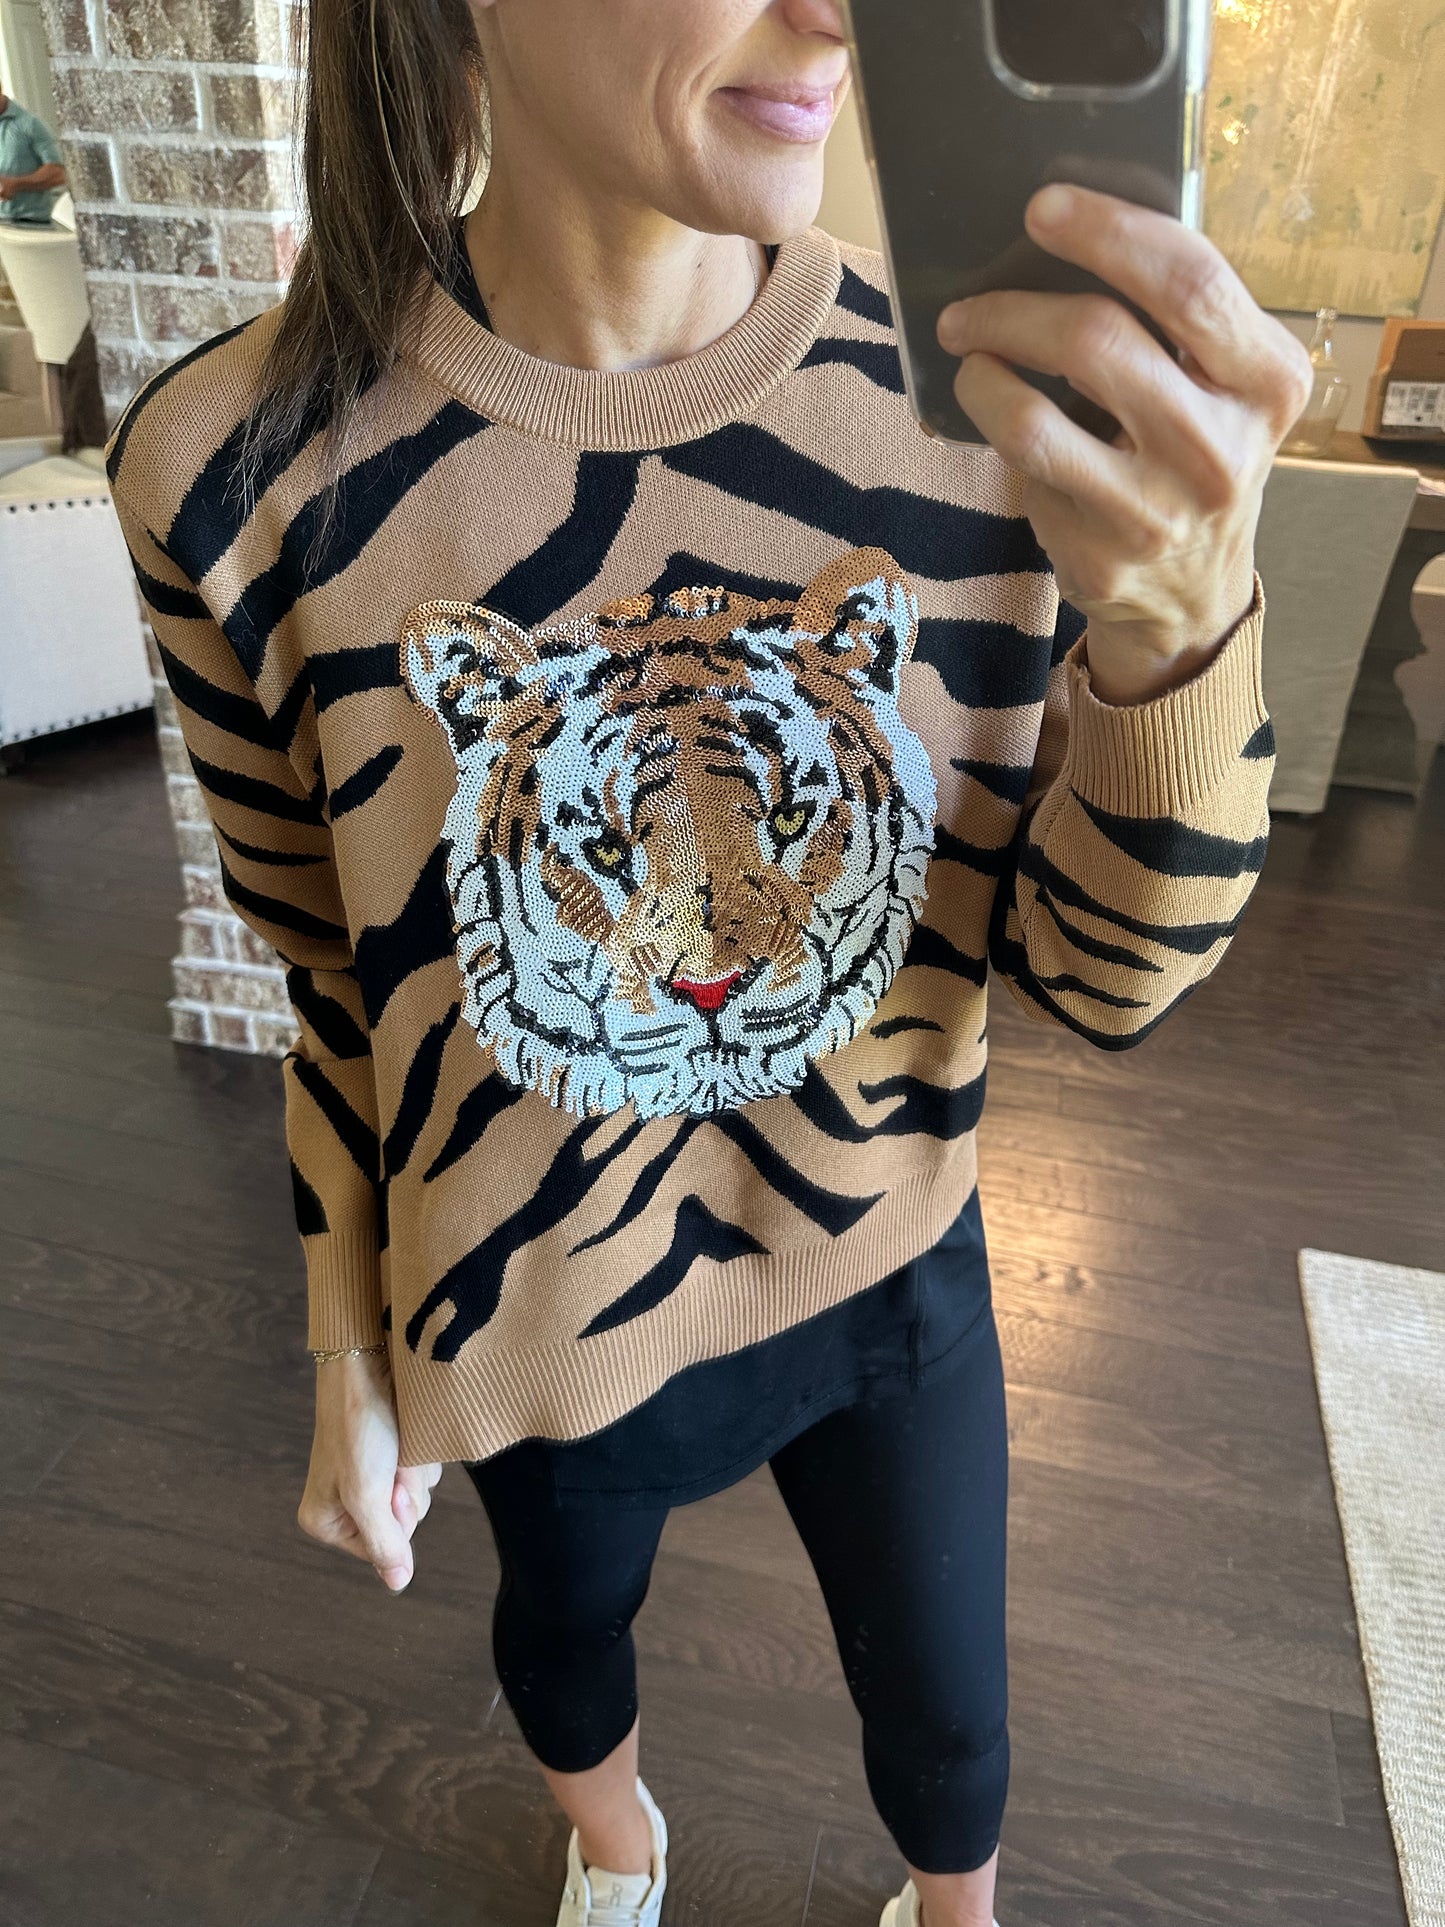 Tiger Print Tiger Head Sweater